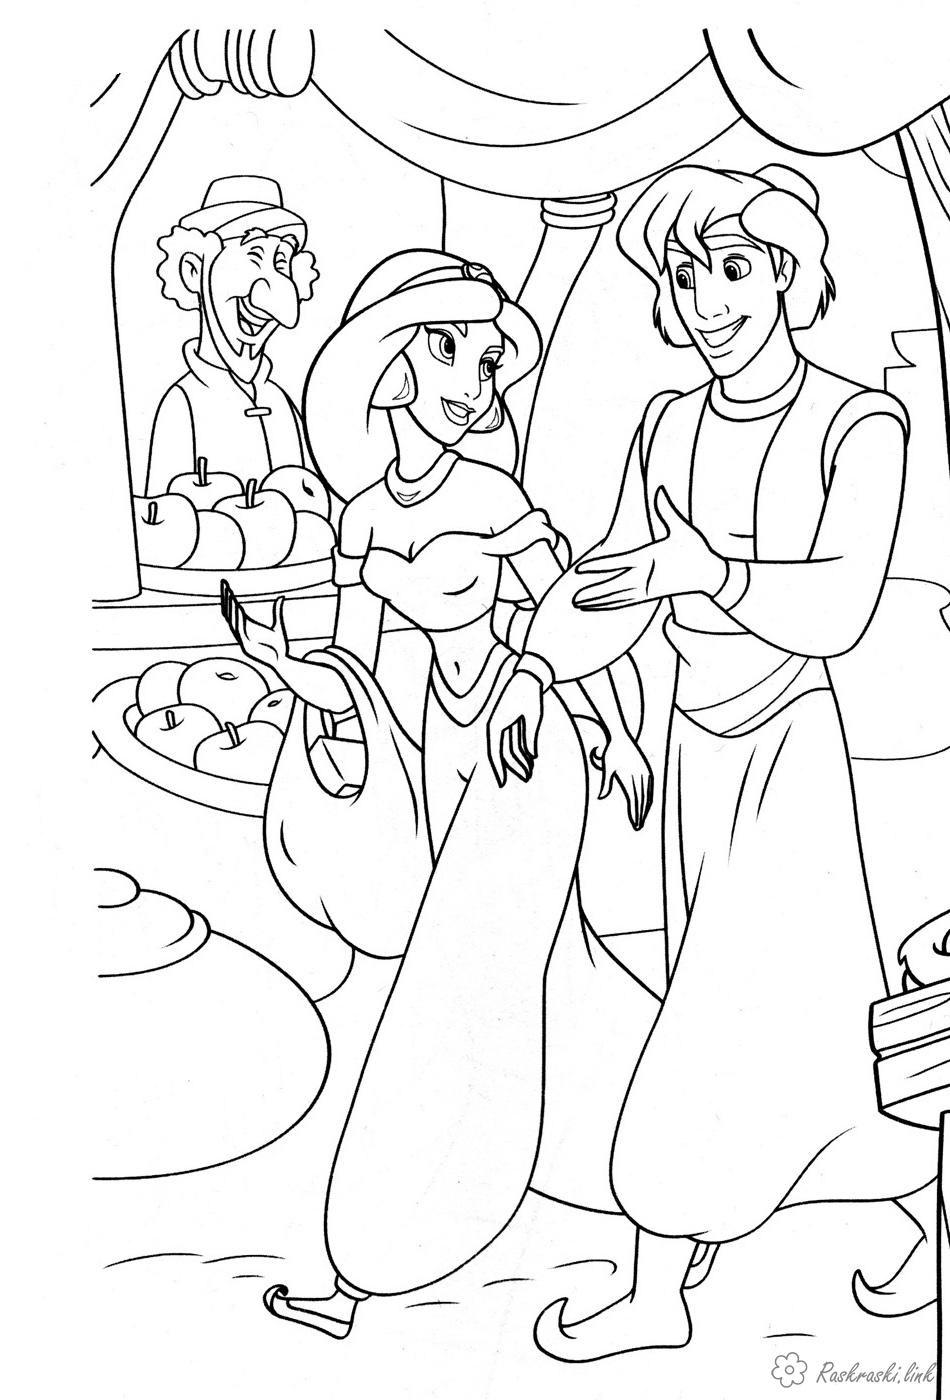  раскраски на тему алладин                   раскраски на тему Аладдин для мальчиков и девочек.  раскраски с персонажами диснеевского мульфильма Аладдин       